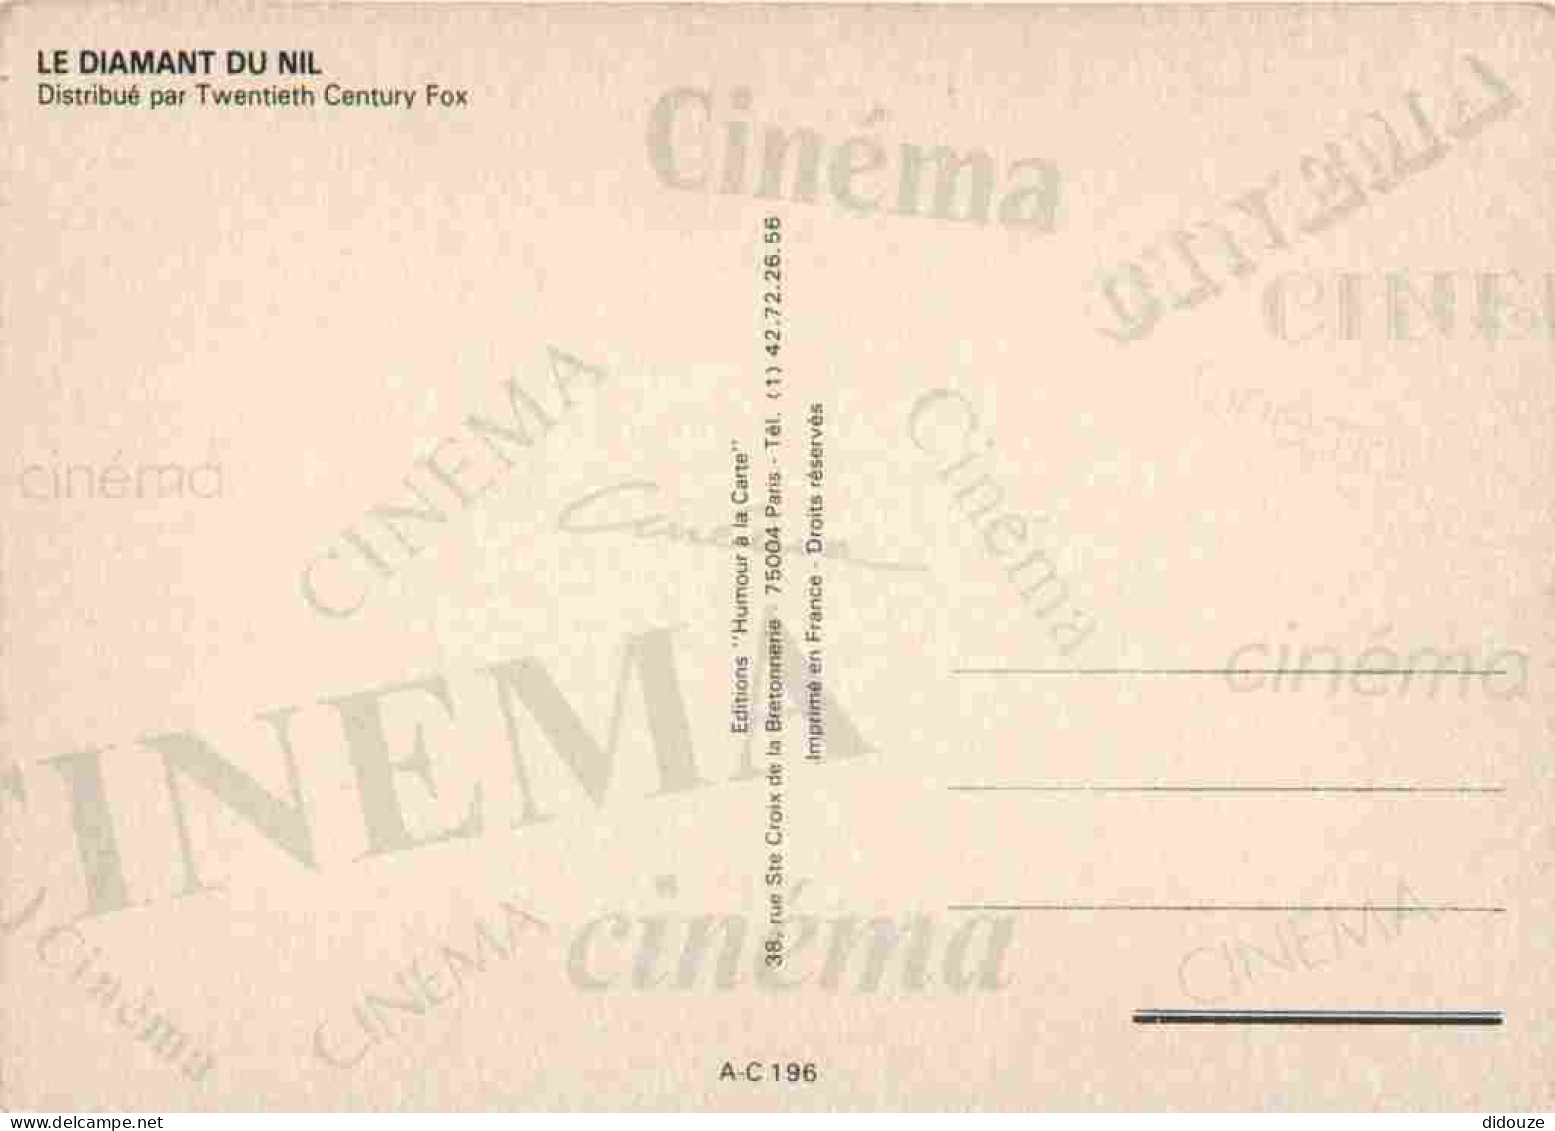 Cinema - Affiche De Film - Le Diamant Du Nil - Michael Douglas - Kathleen Turner - Danny DeVito - CPM - Carte Neuve - Vo - Posters On Cards